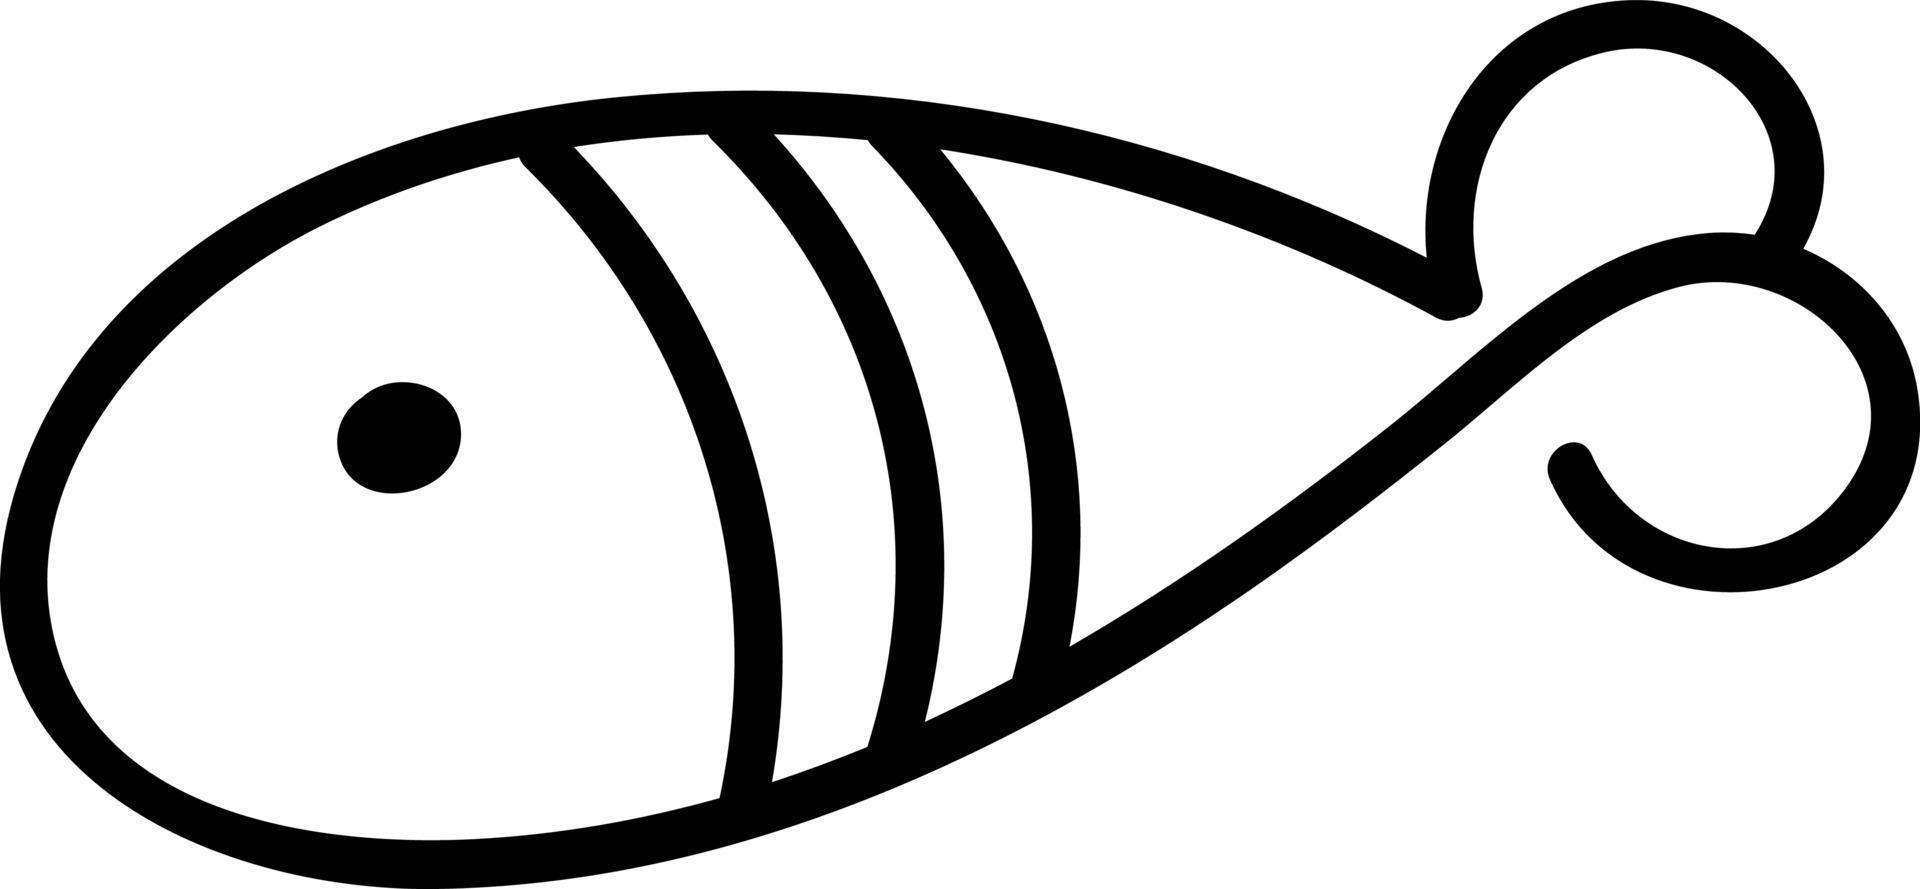 poisson avec deux bandes, illustration, vecteur sur fond blanc.